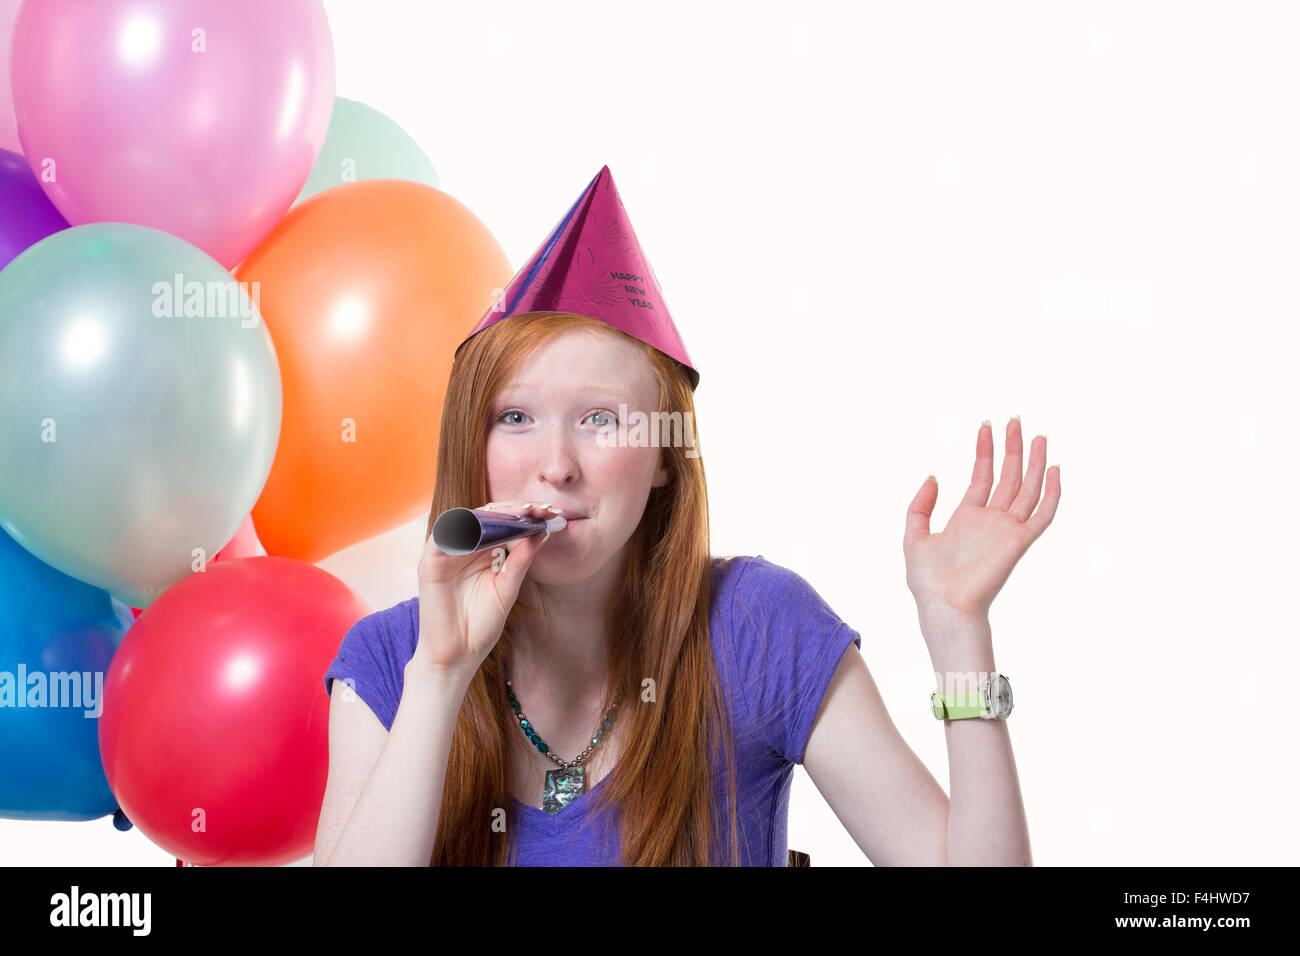 Jeune fille à célébrer un anniversaire Fond blanc Banque D'Images